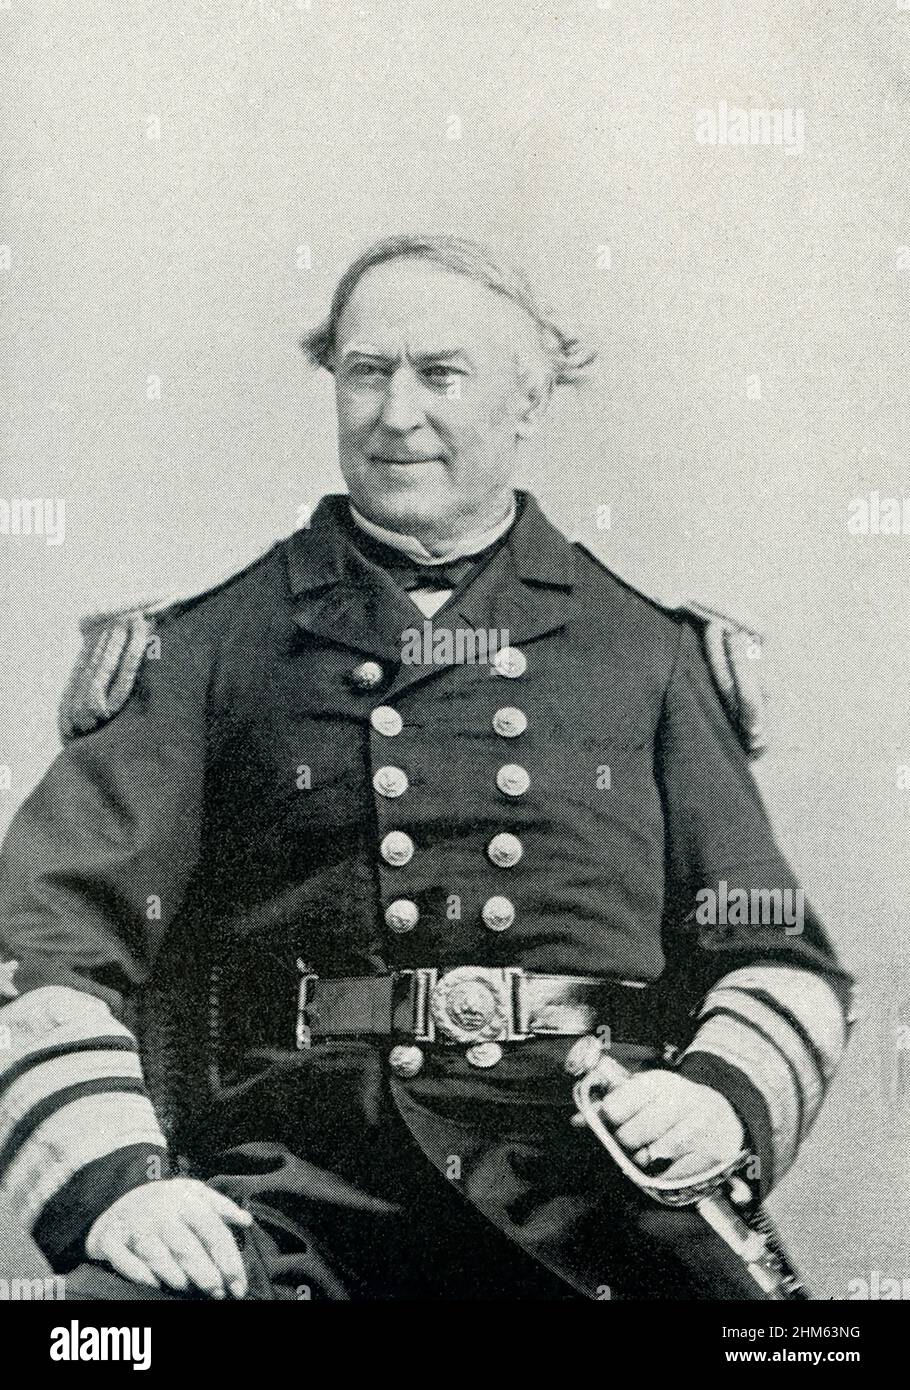 David Glasgow Farragut (gestorben 1870) war während des amerikanischen Bürgerkrieges Flaggenoffizier der US-Marine. Er war der erste hintere Admiral, Vizeadmiral und Admiral in der United States Navy. Stockfoto